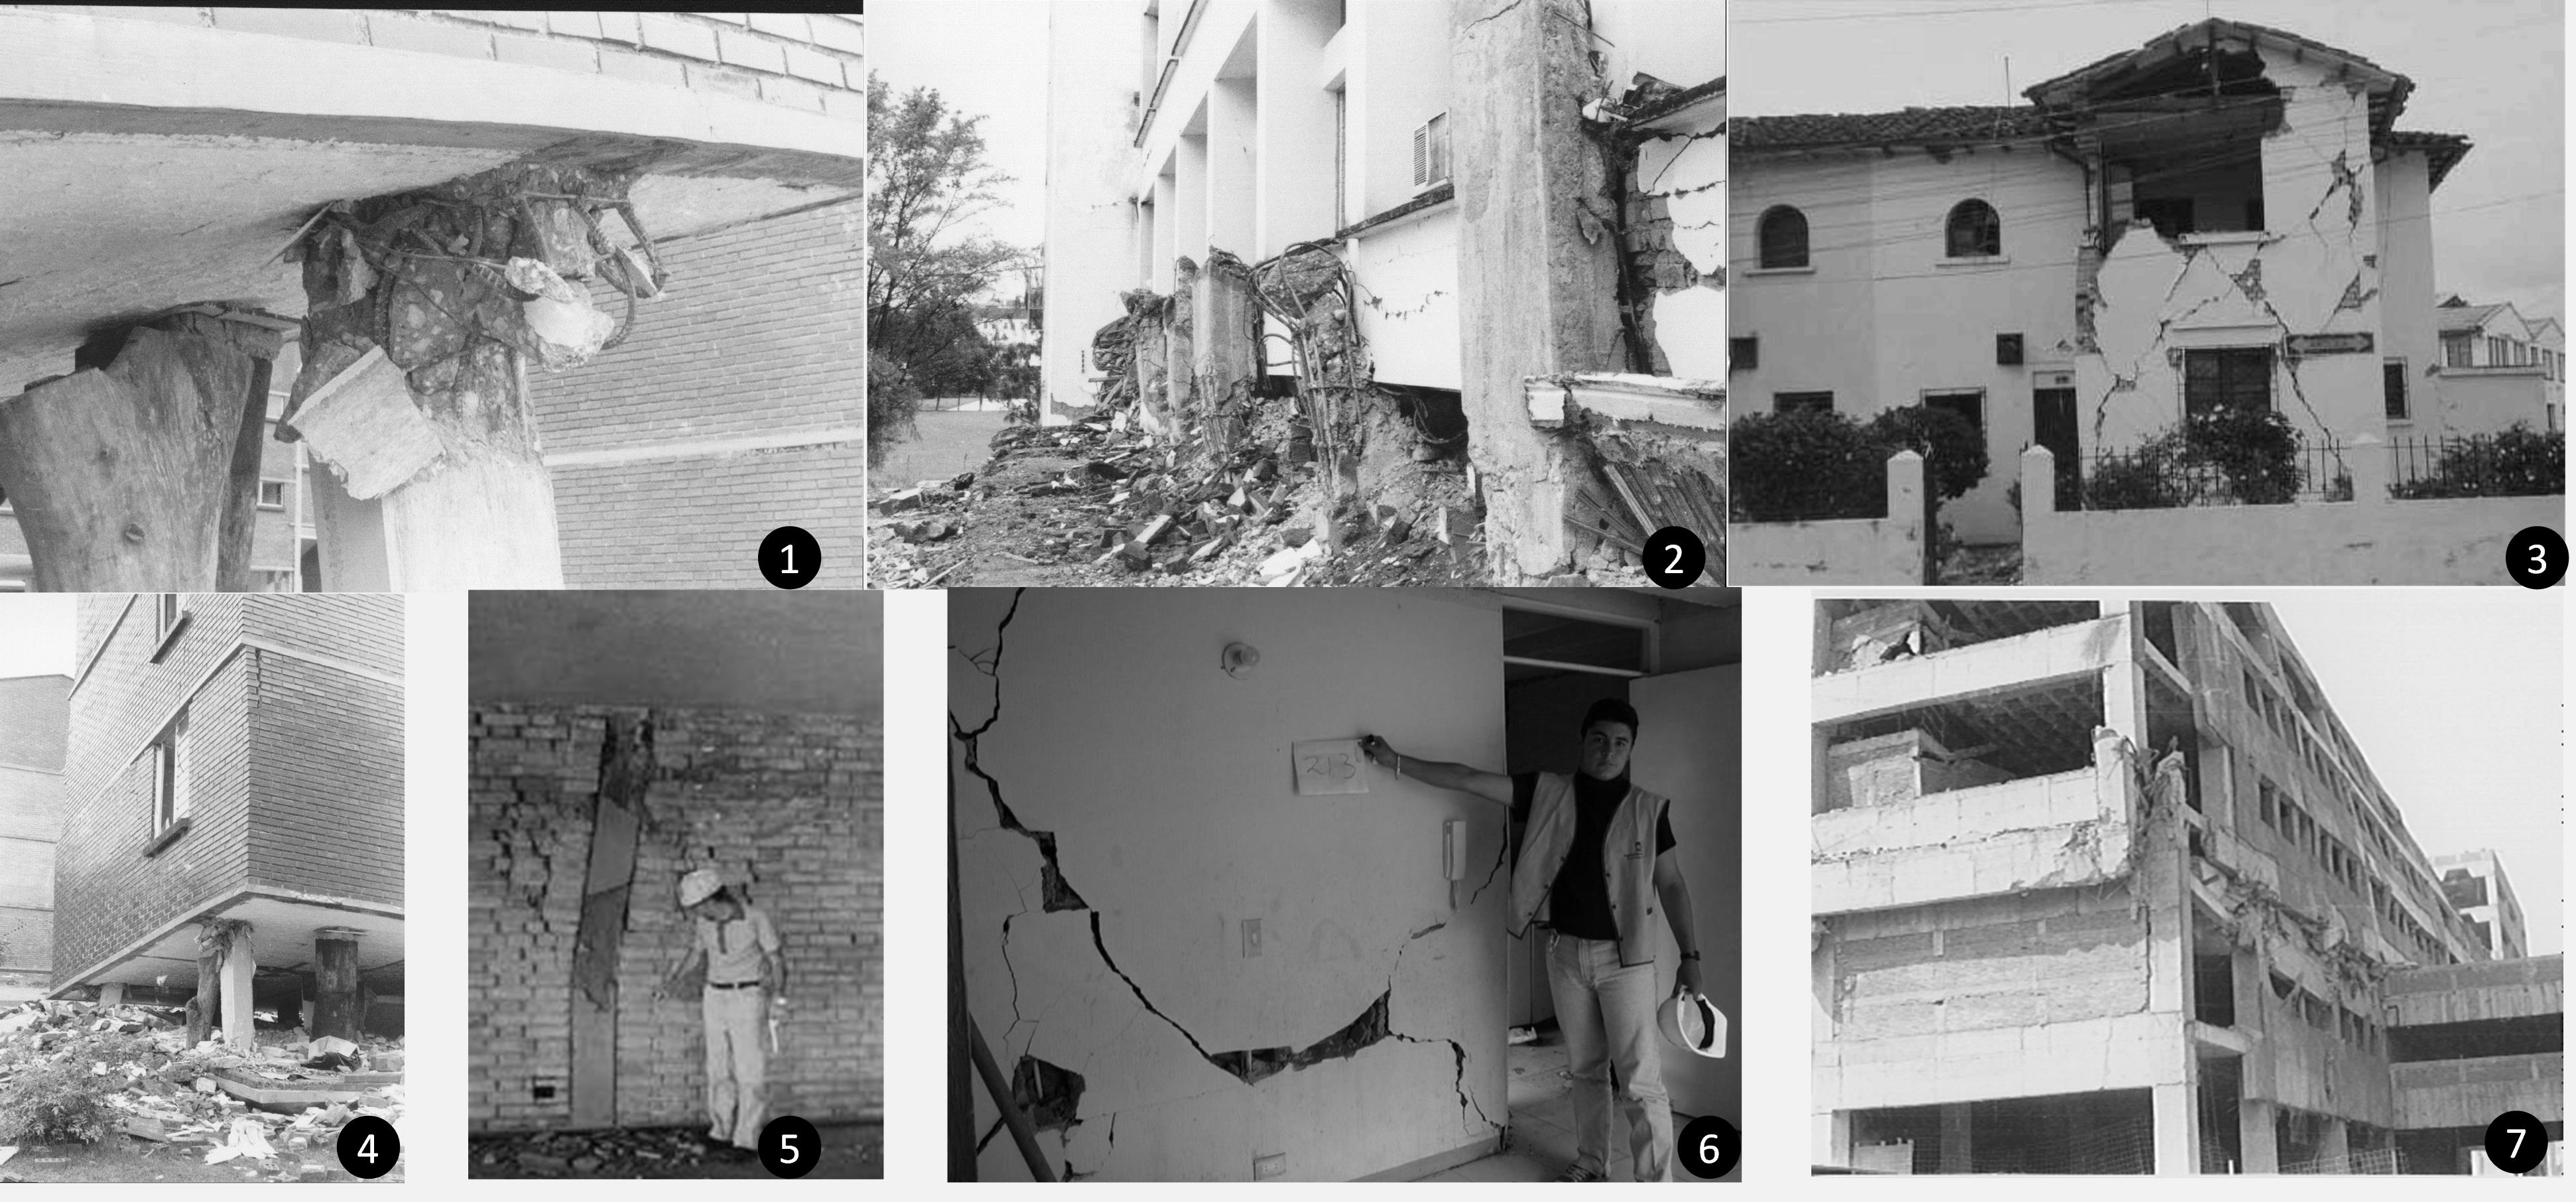 Дома после землетрясения. Обвальные землетрясения. Землетрясение в Колумбии. Дом после землетрясения. Дом до и после землетрясения.